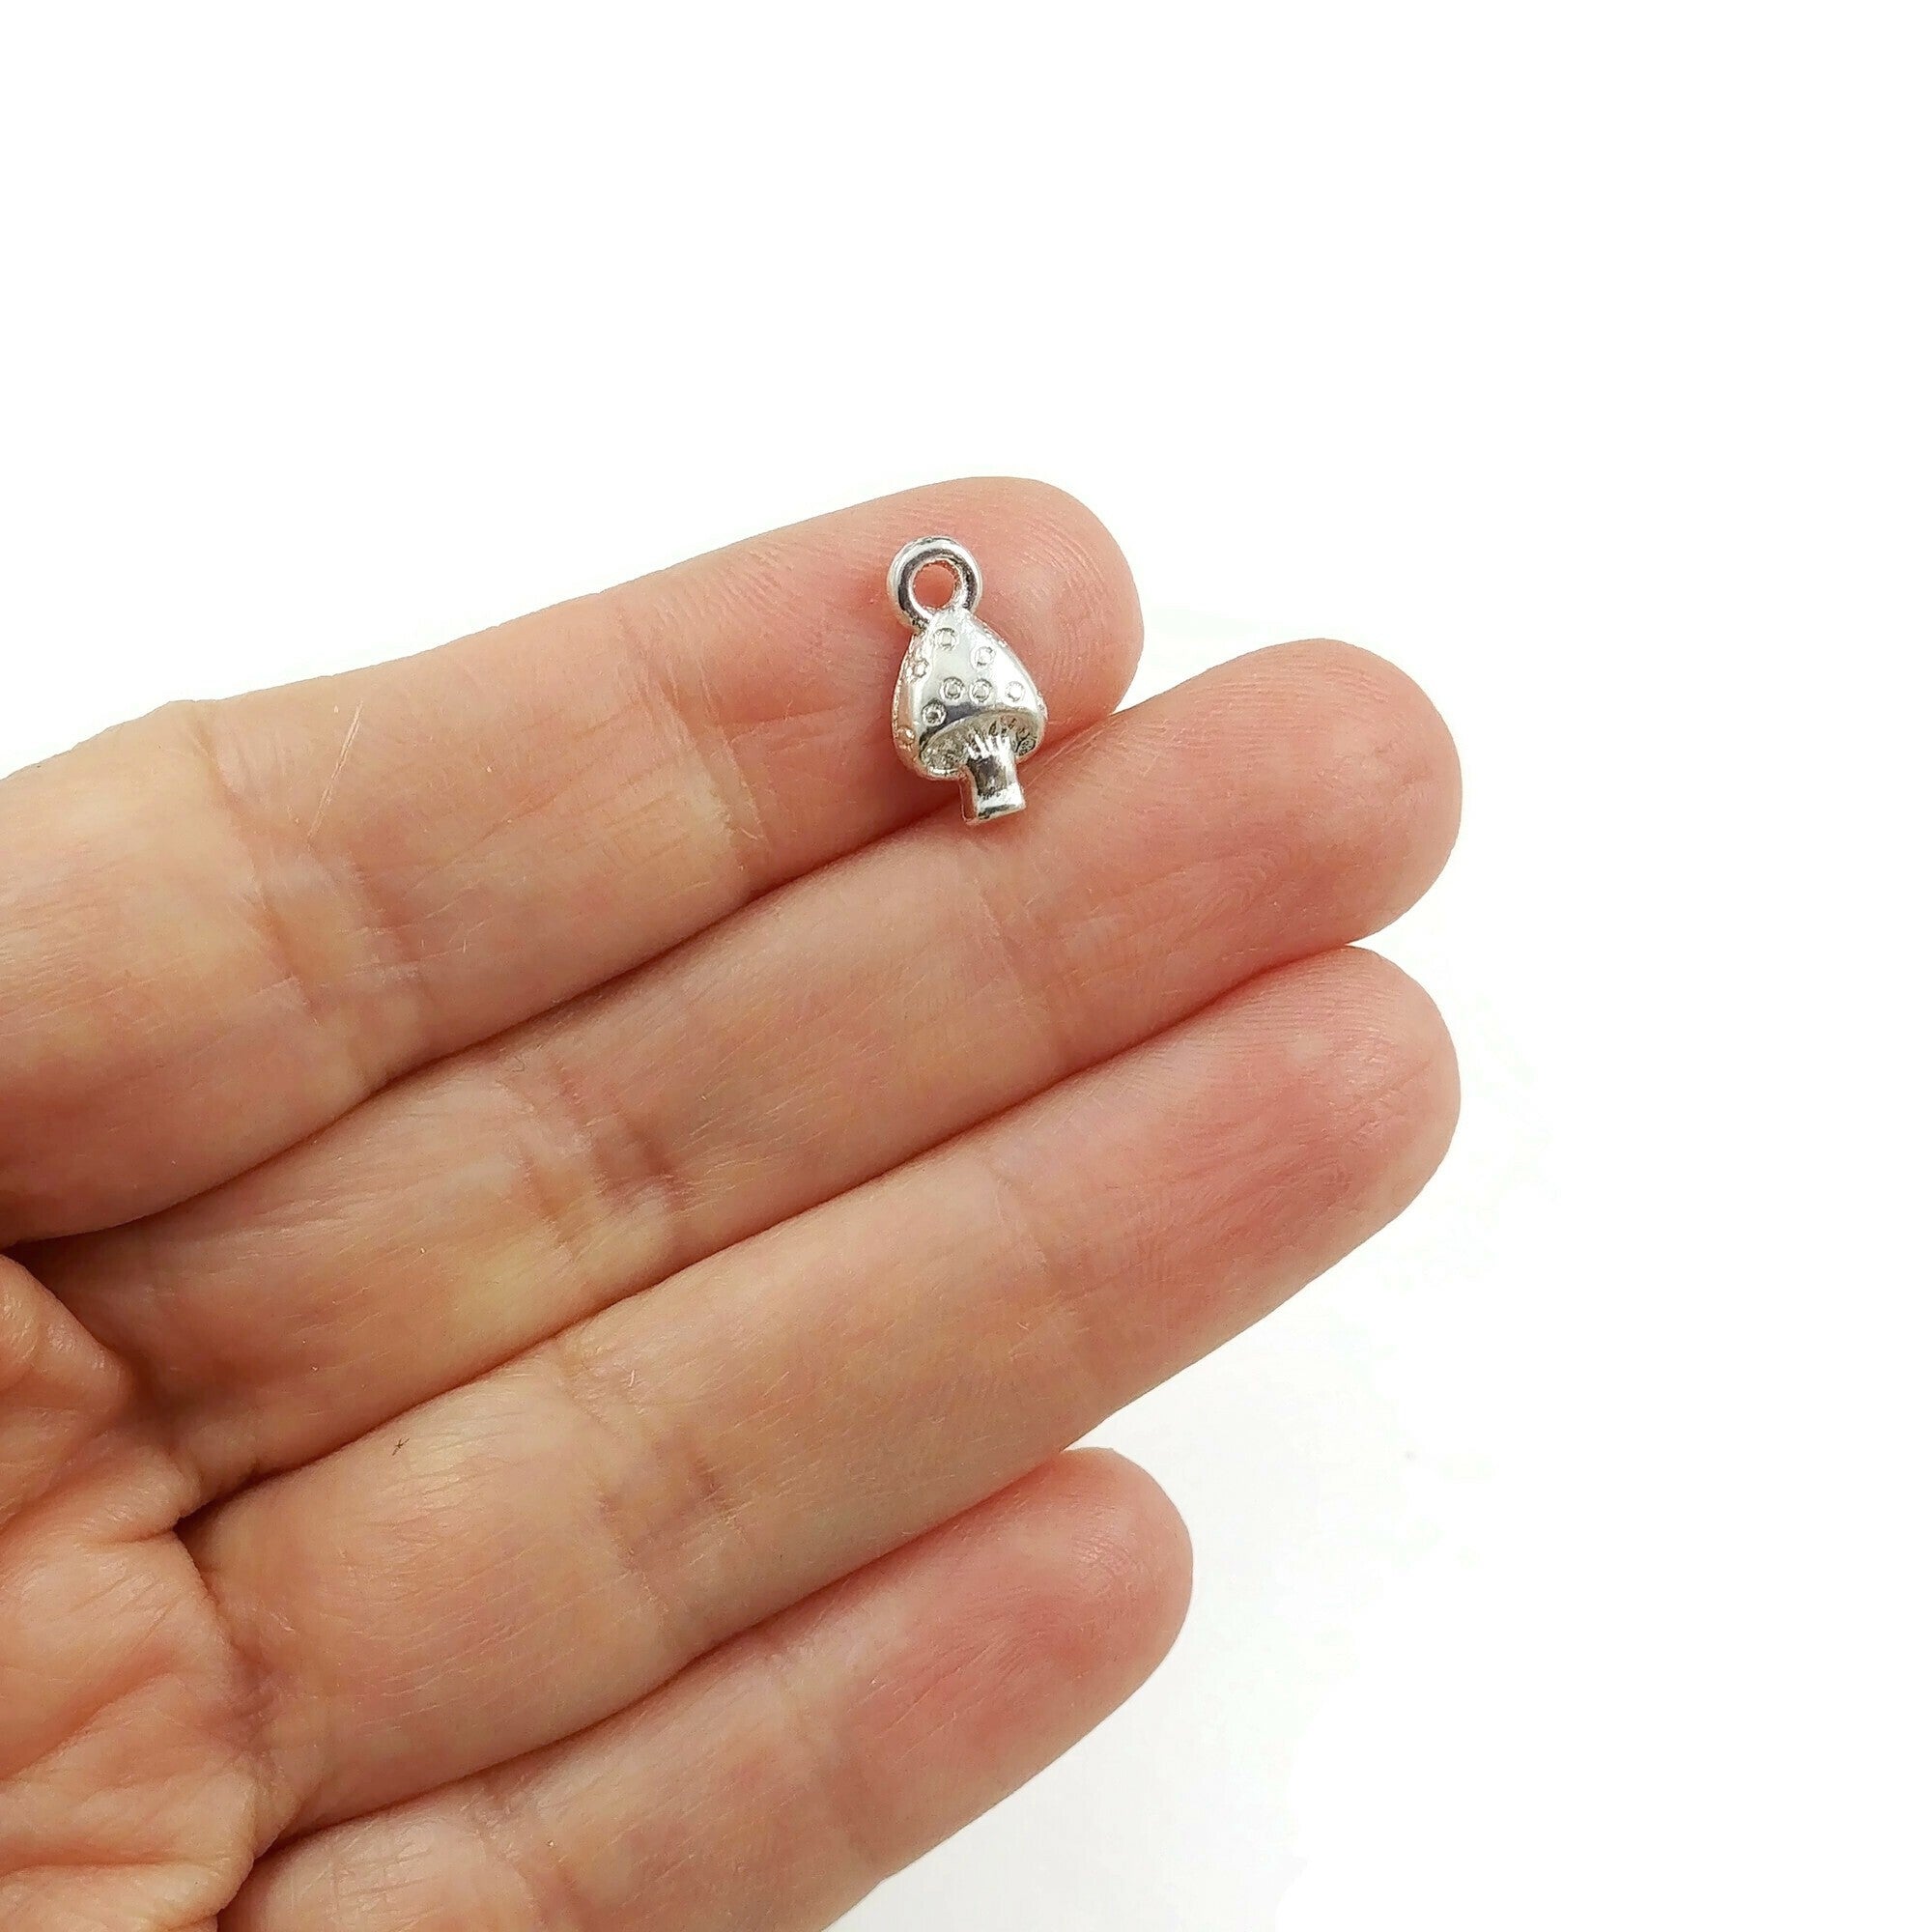 10 tiny mushroom metal pendants 13mm - Nickel free, lead free and cadmium free